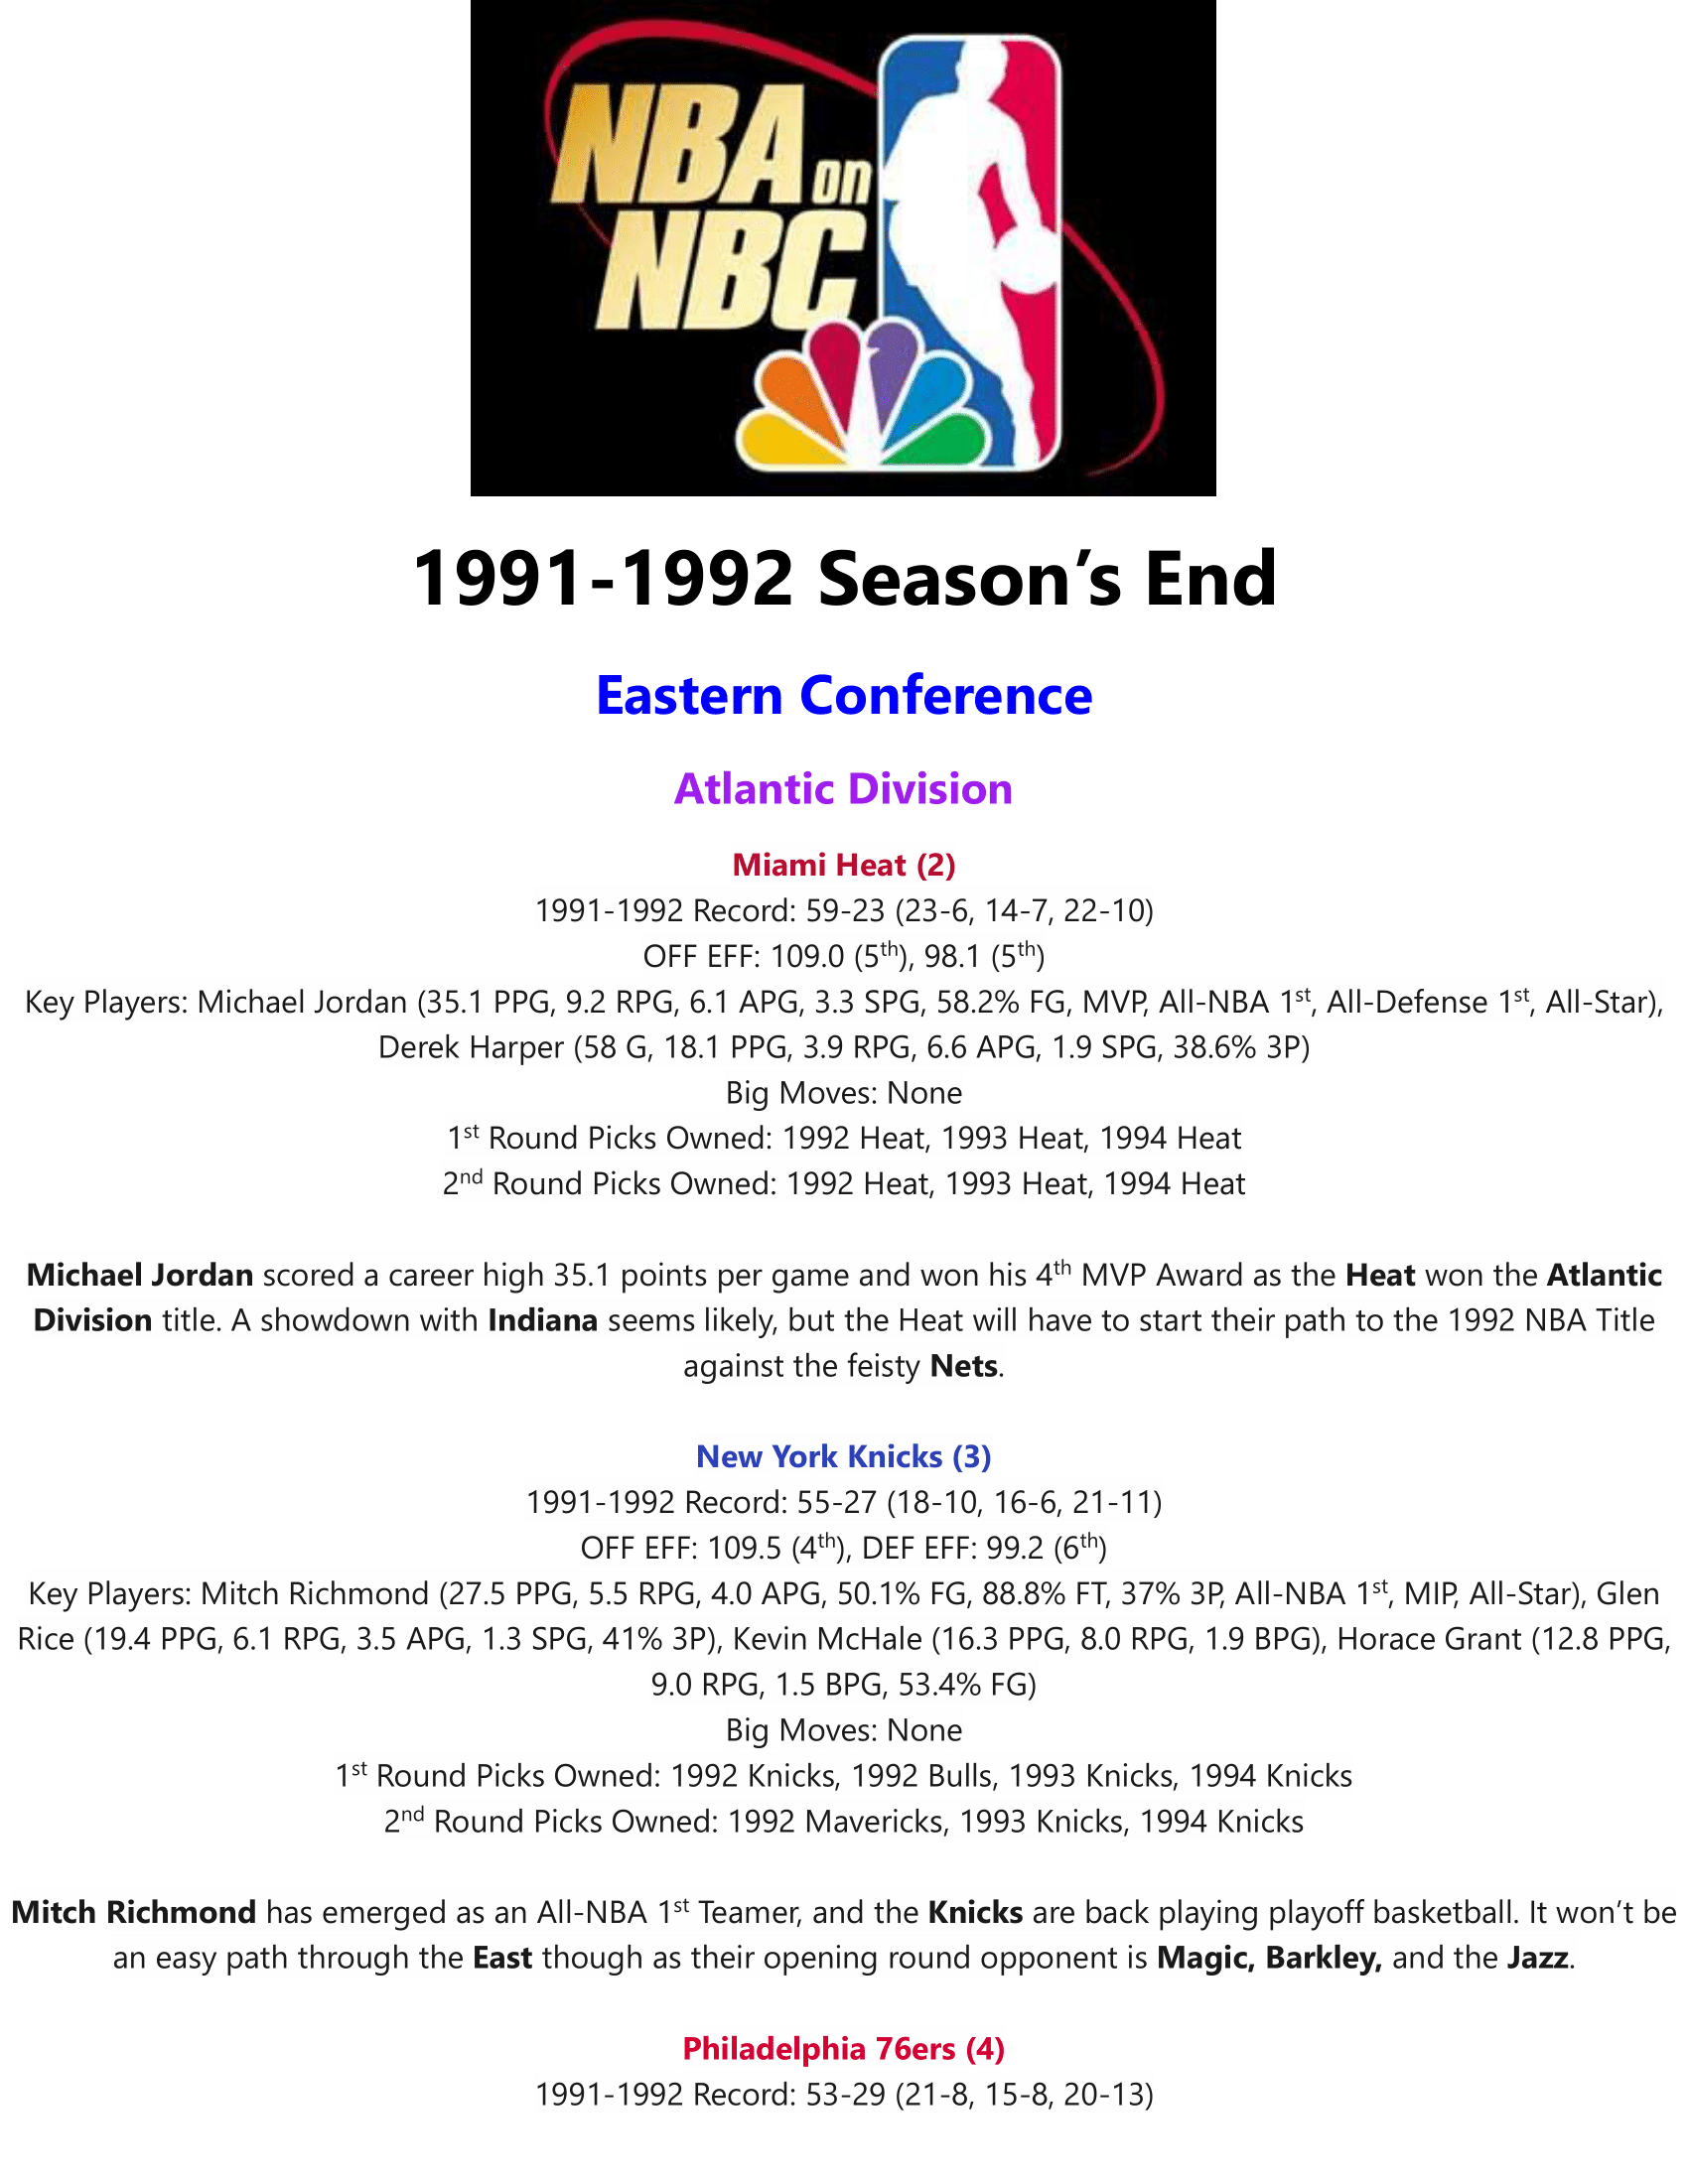 91-92-Part-3-Season-End-01.png